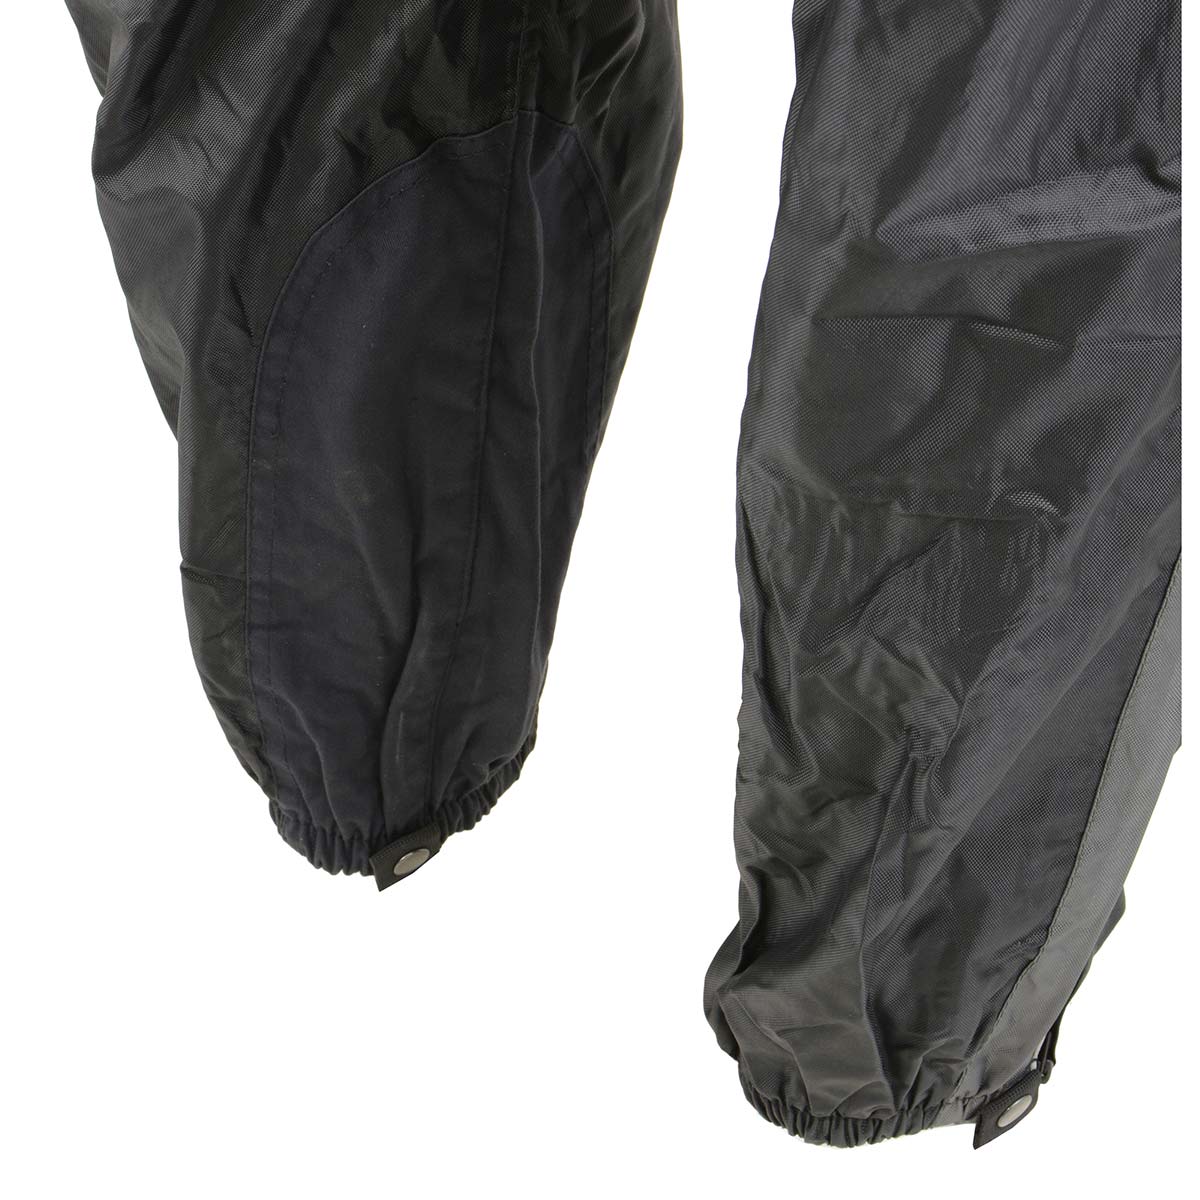 NexGen SH222503 Women's Motorcycle-Outdoors Black and Grey Hooded Water Proof Rain Suit